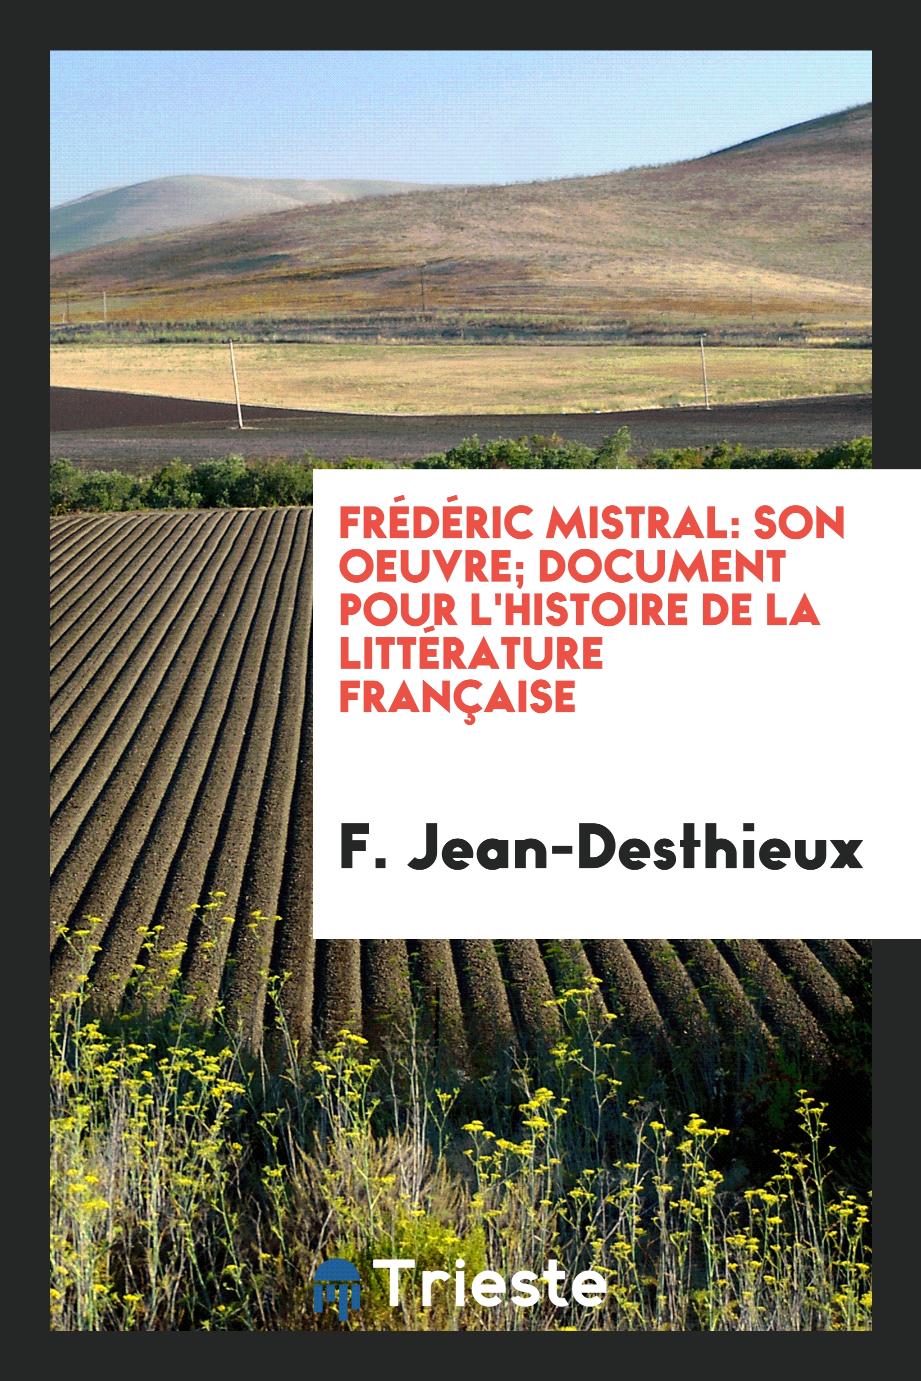 F. Jean-Desthieux - Frédéric Mistral: son oeuvre; document pour l'histoire de la littérature française